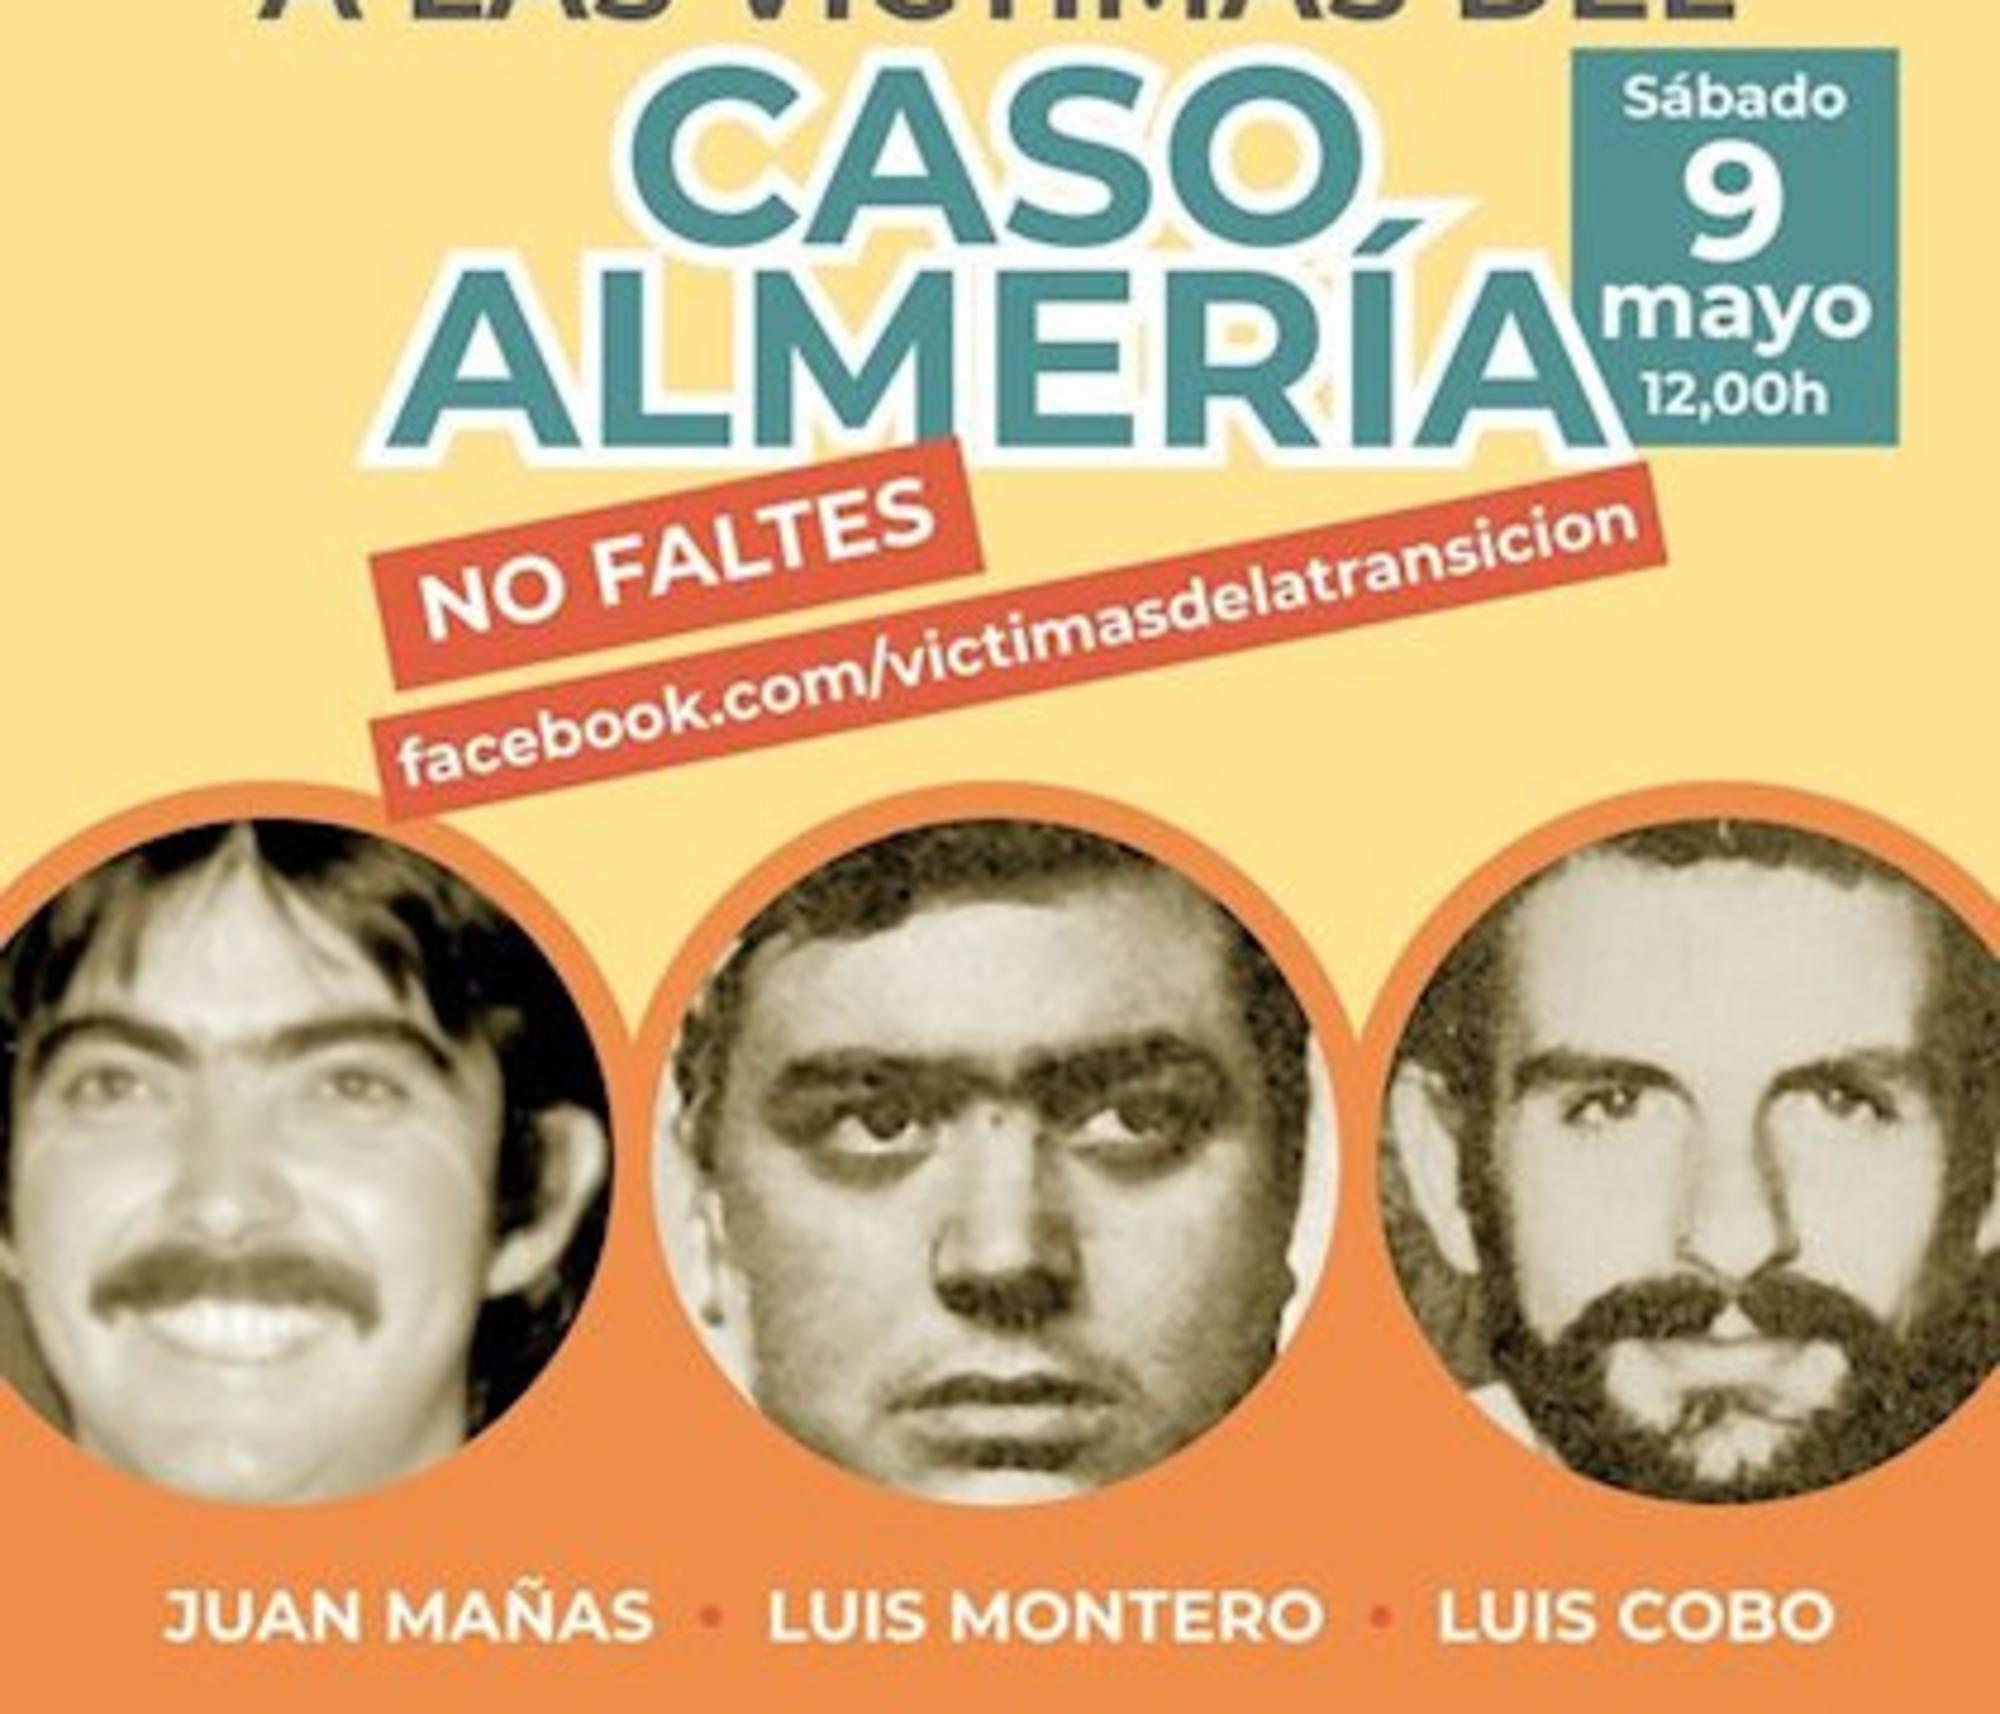 Detalle del cartel en homenaje 2020 a los asesinados en el Caso Almería